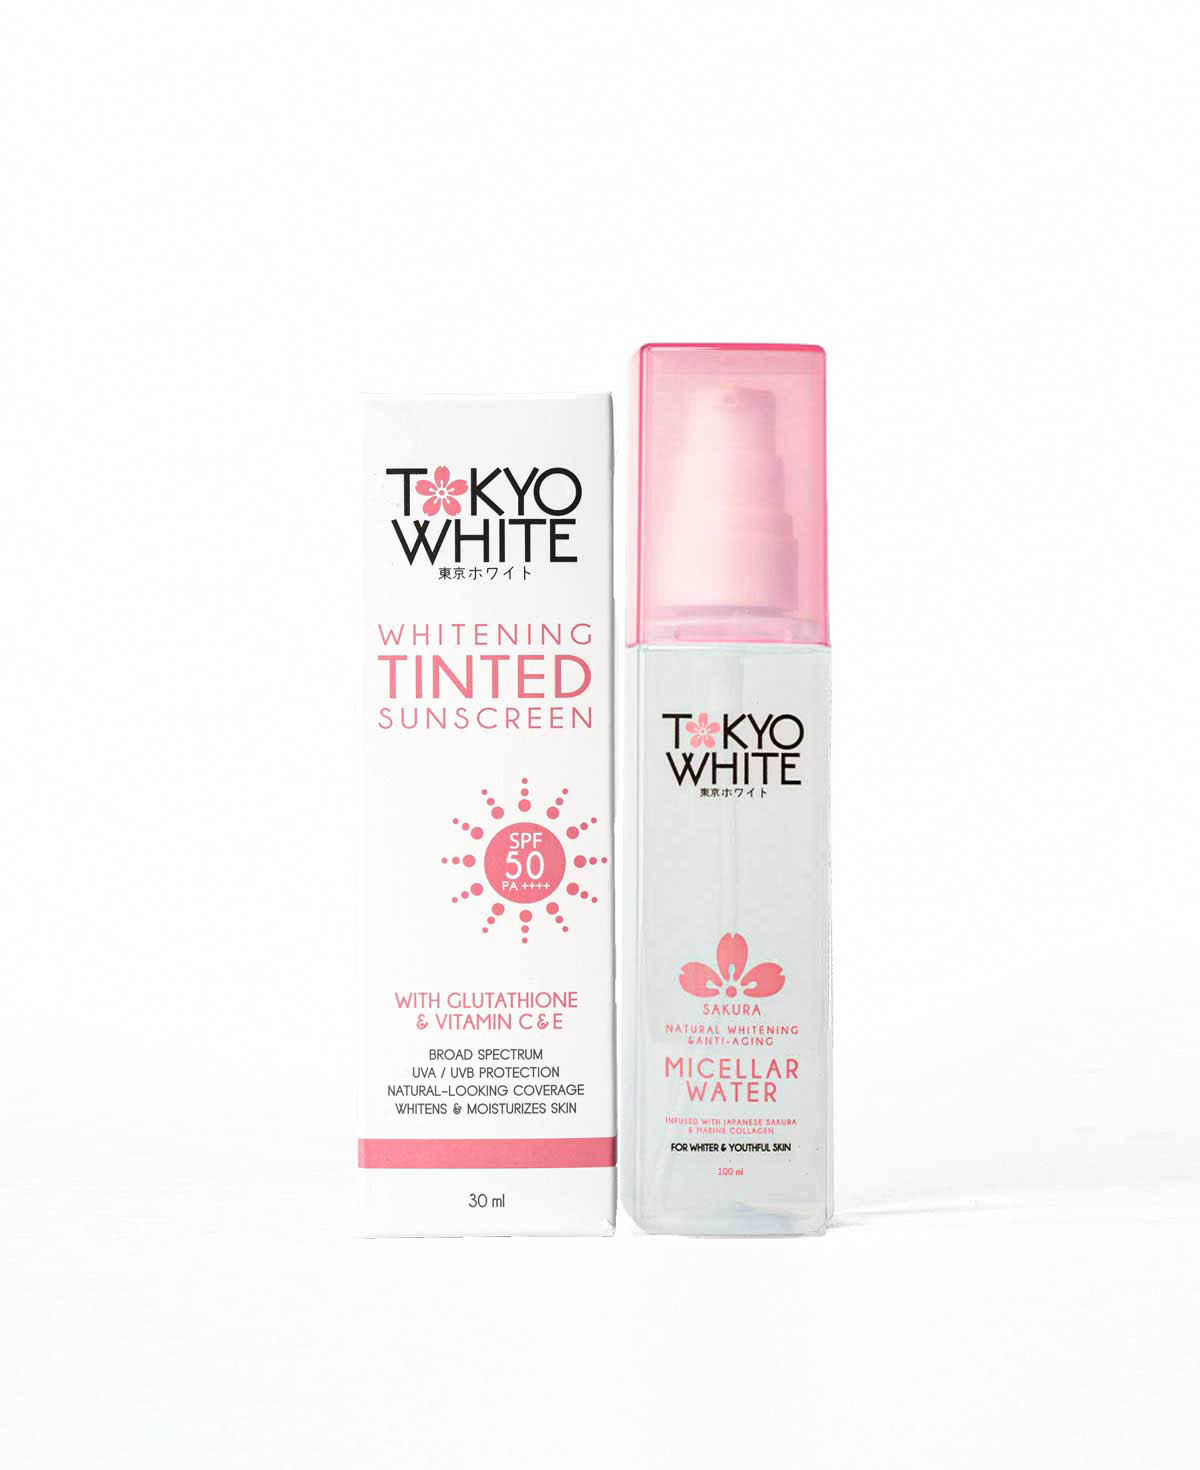 Tokyo White Whitening Tinted Sunscreen and Tokyo White Sakura Natural Whitening & Anti-aging Micellar Water